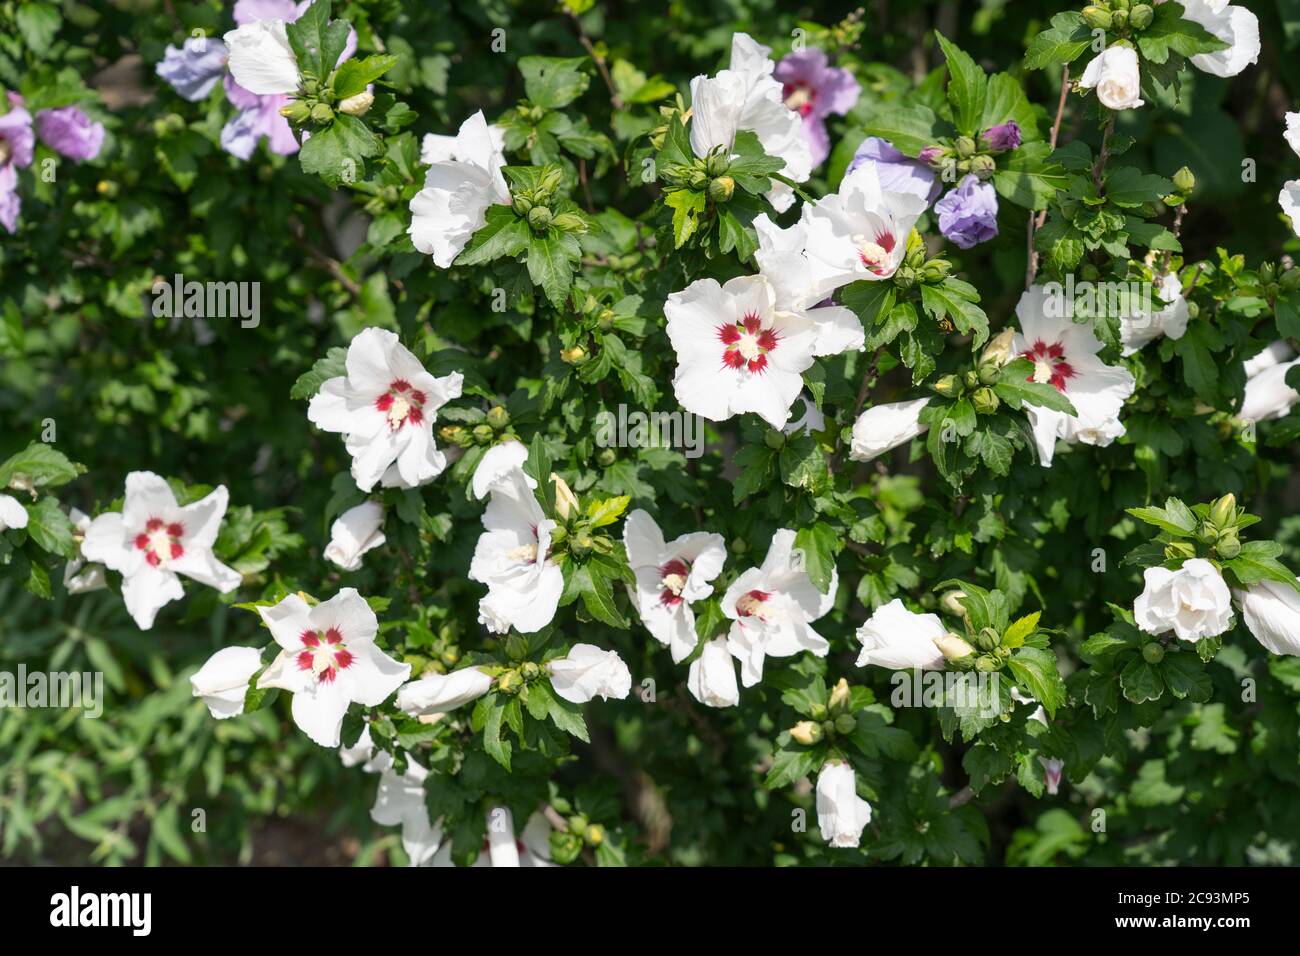 Hibiscus Syriacus L. coeur rouge (Rose de Shannon) un arbuste décidus avec une grande trompette comme des fleurs blanches avec un centre rouge Banque D'Images